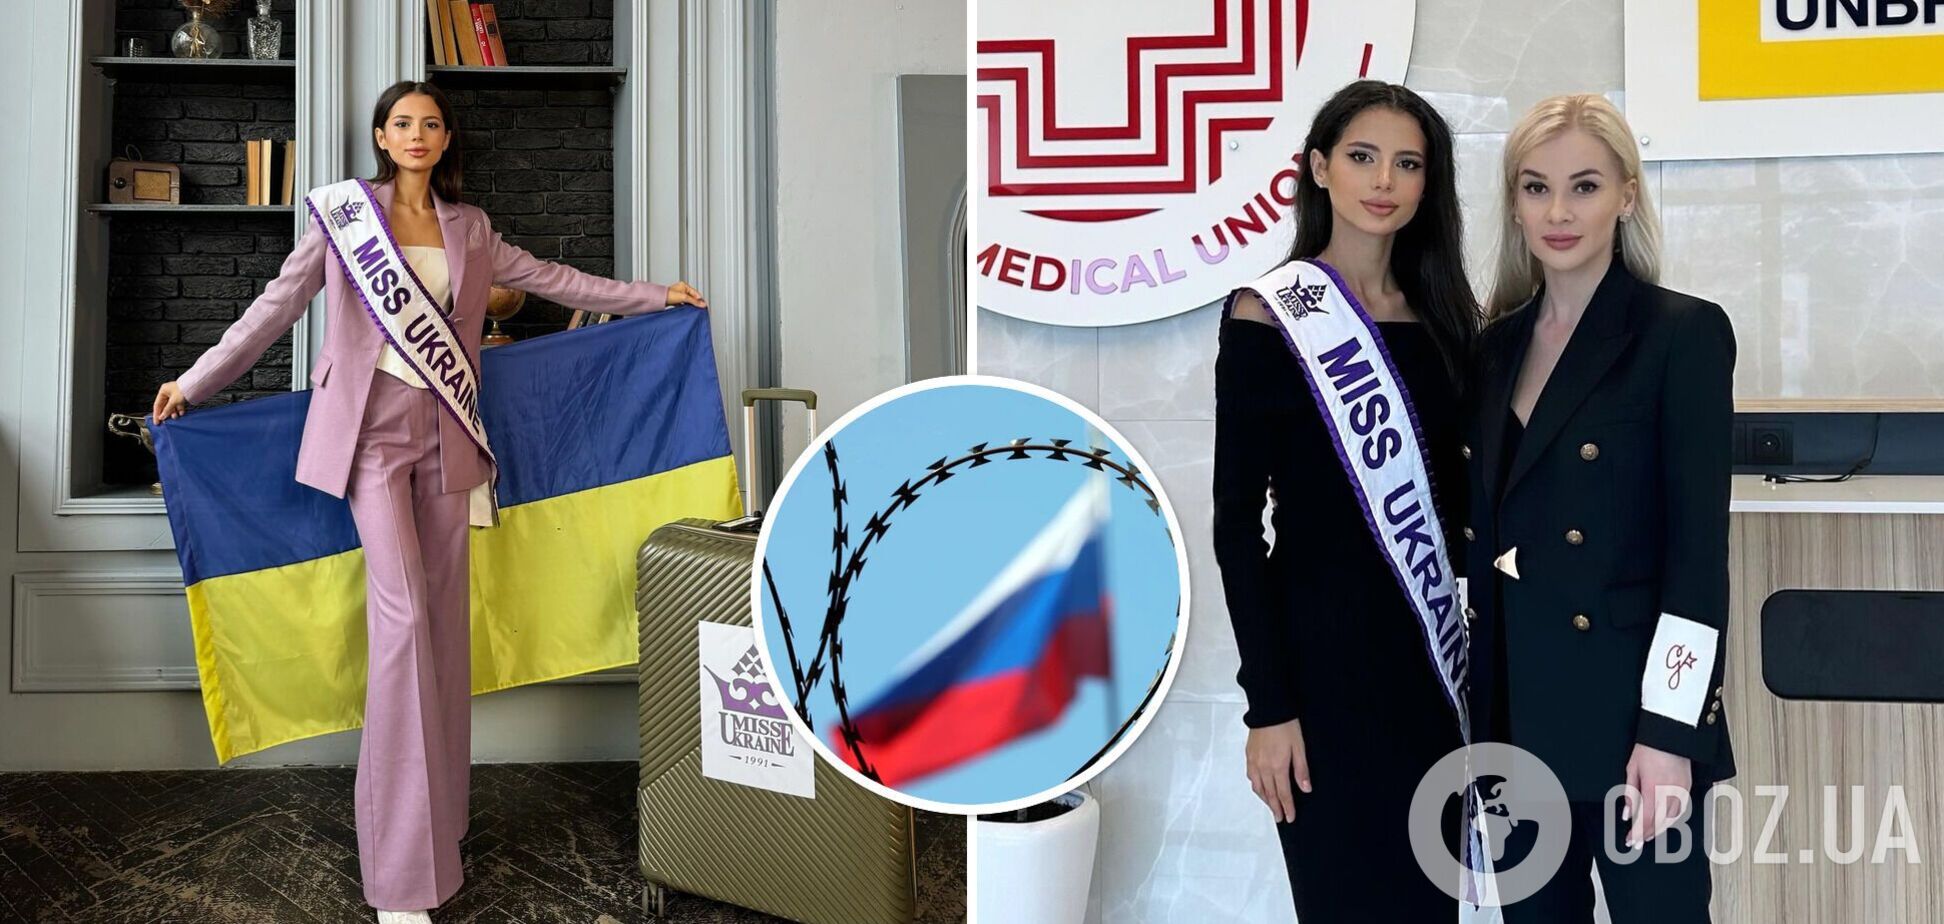 Россия не будет участвовать в 'Мисс Мира': стало известно о резонансном решении оргкомитета конкурса красоты после обращения Украины